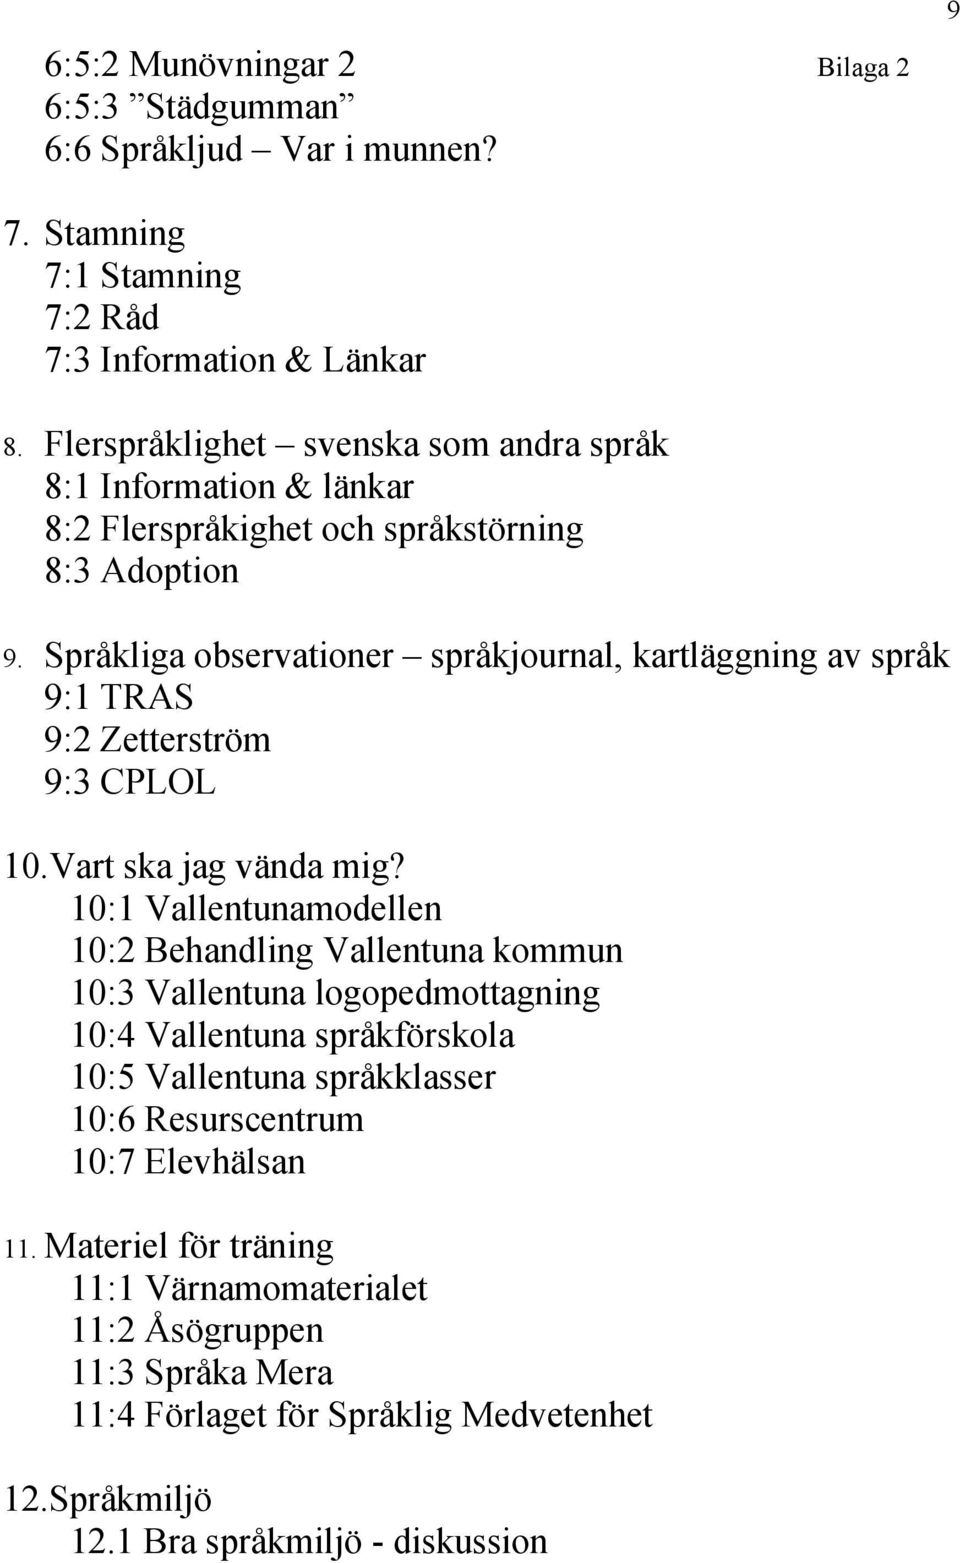 Språkliga observationer språkjournal, kartläggning av språk 9:1 TRAS 9:2 Zetterström 9:3 CPLOL 10.Vart ska jag vända mig?